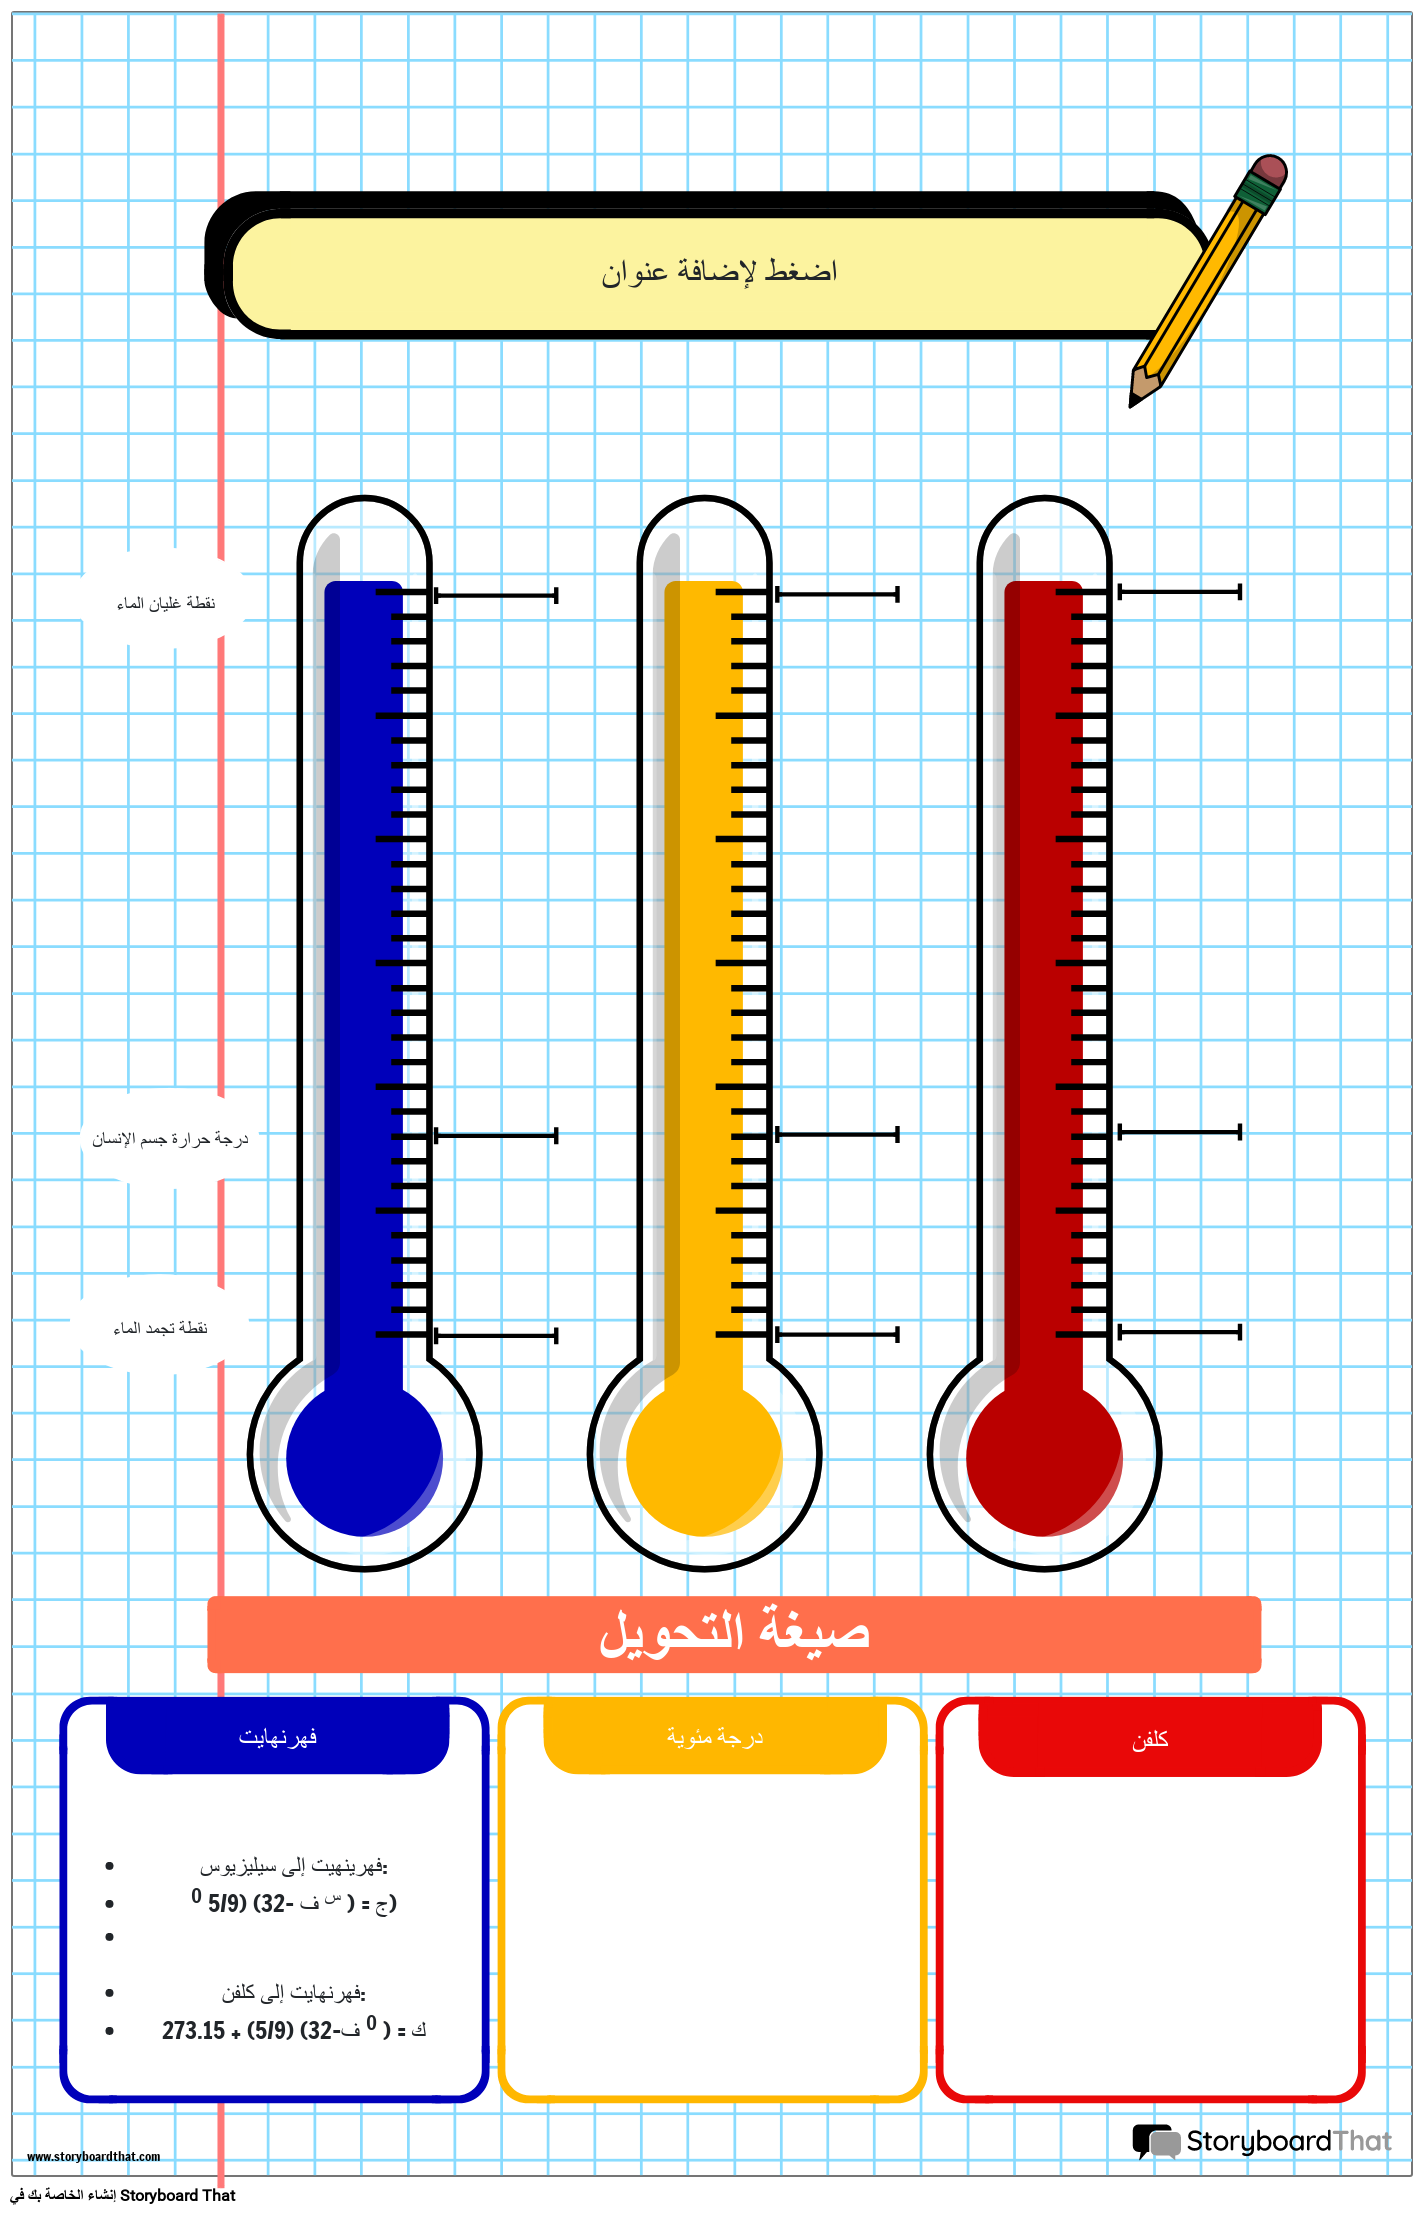 ملصق مخطط درجة الحرارة تحت عنوان دفتر الملاحظات